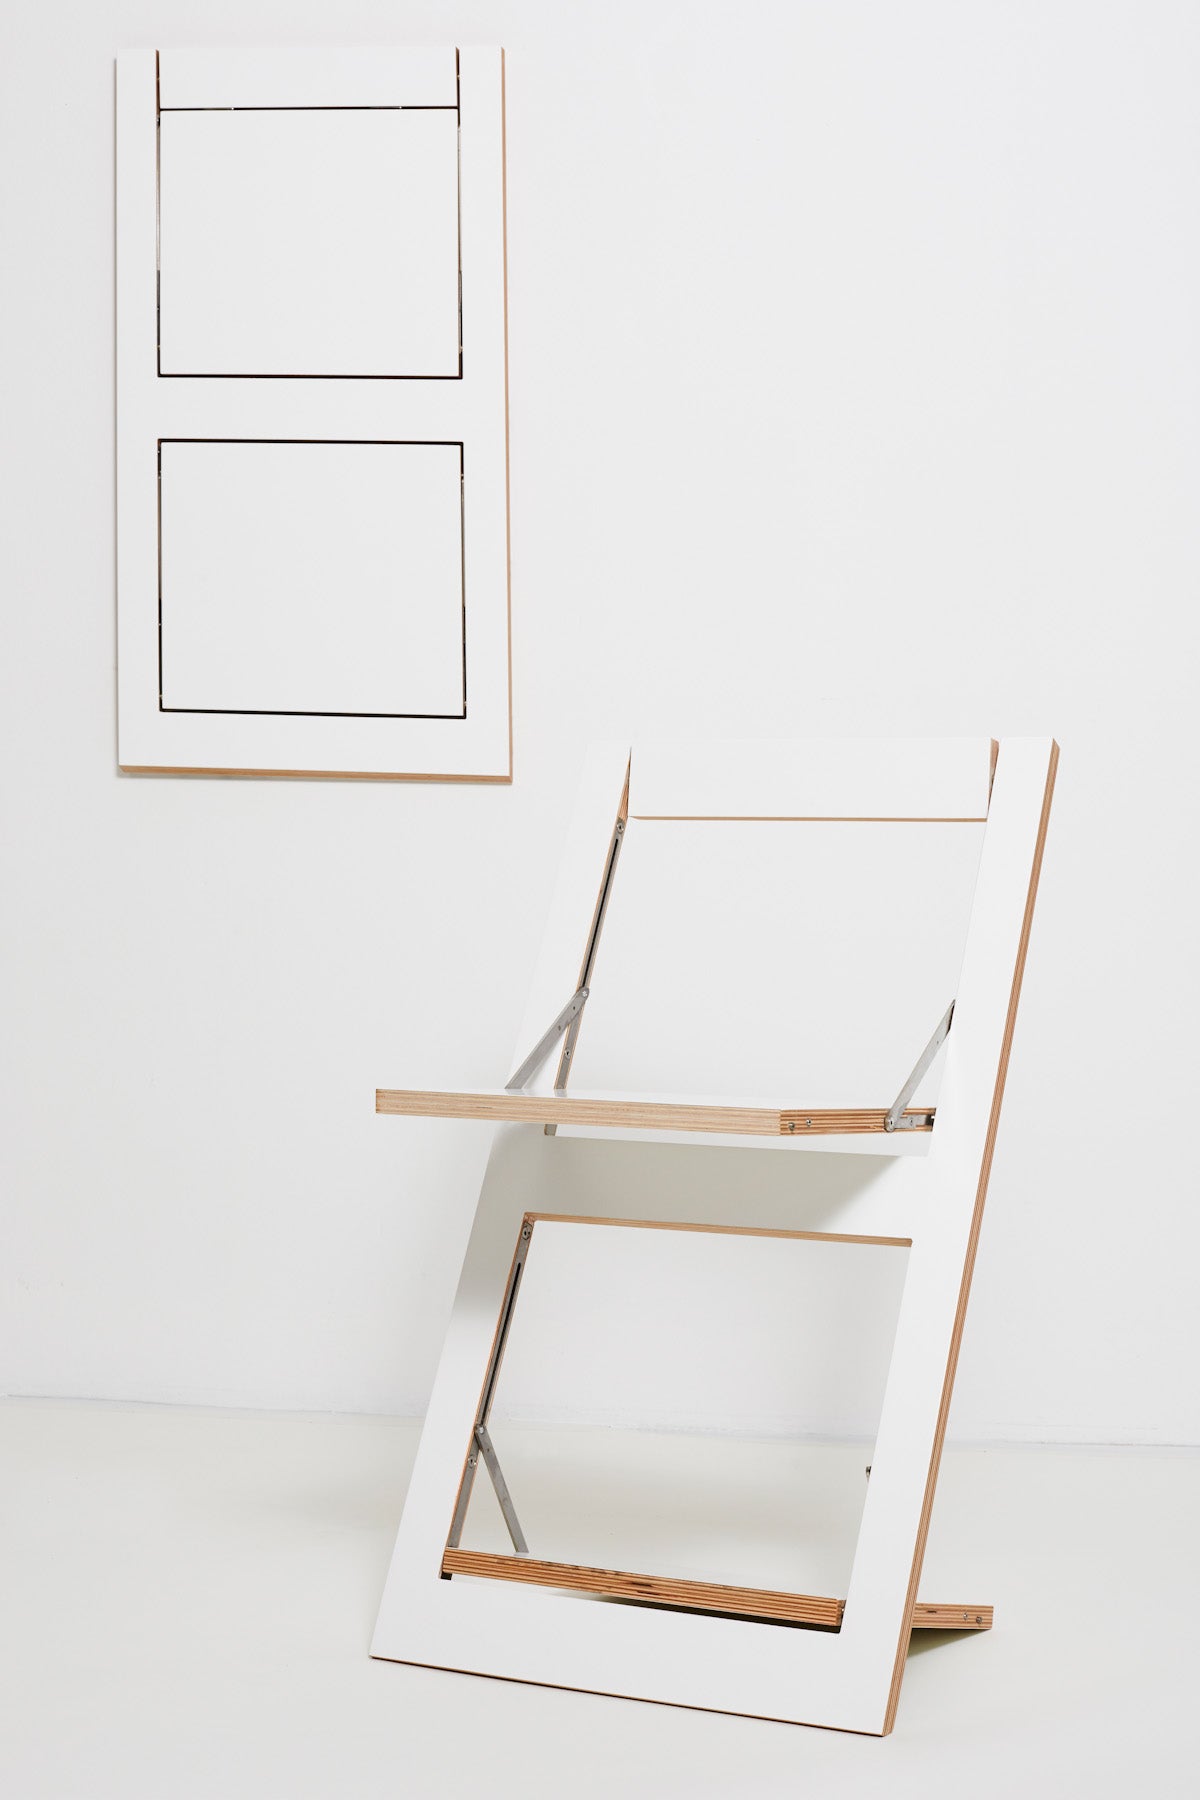 Fläpps Folding Chair